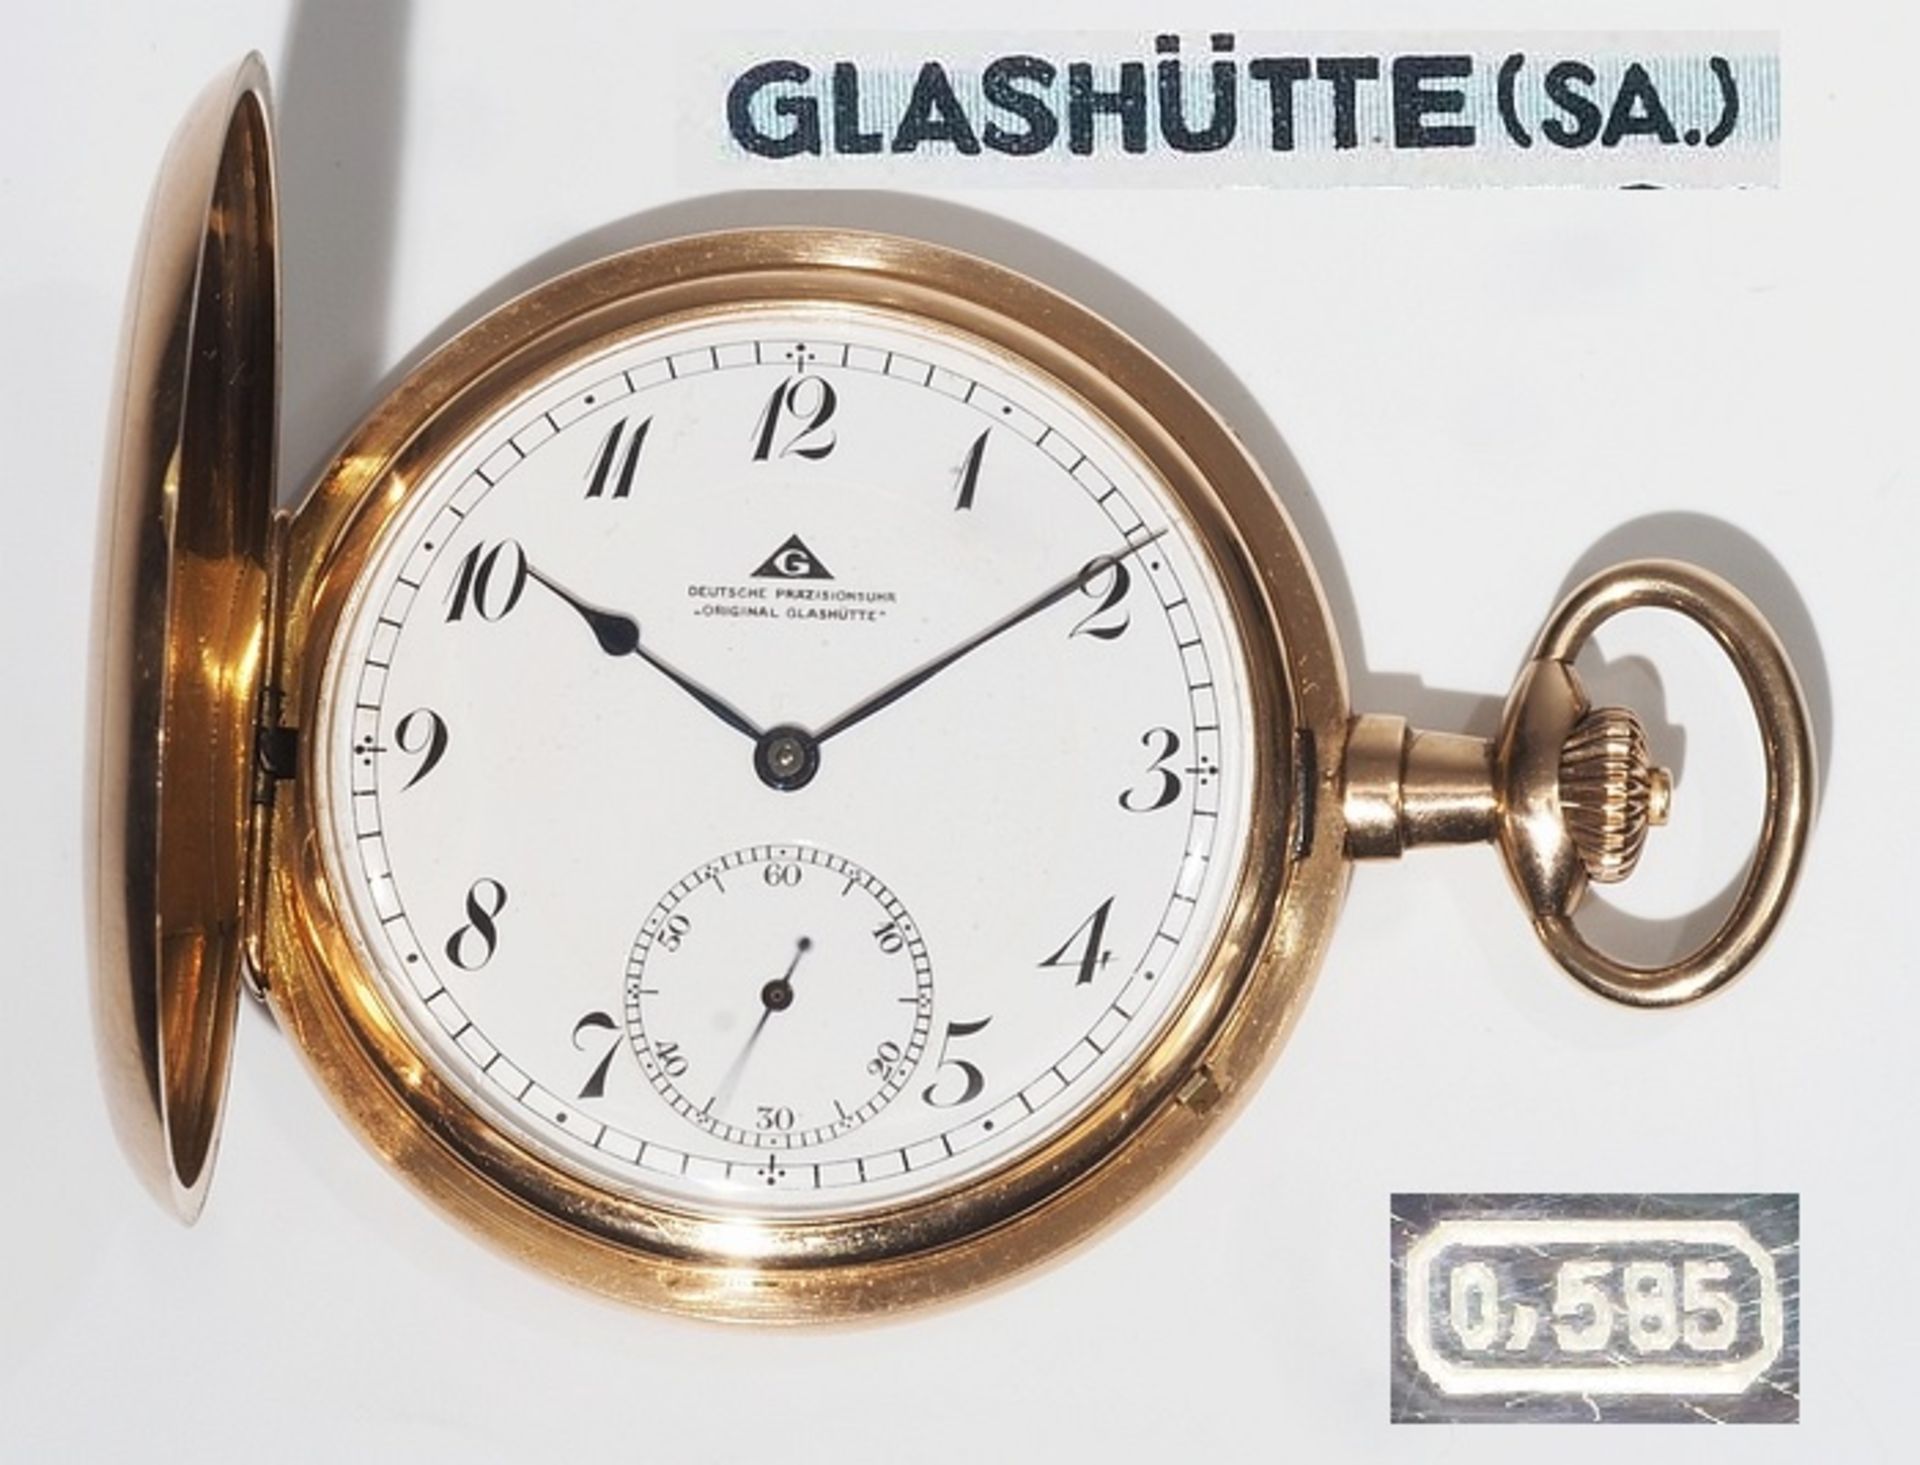 Savonette / Sprungdeckel Taschenuhr. Deutsche Präzisions-Uhrenfabrik Glashütte. Referenznummer